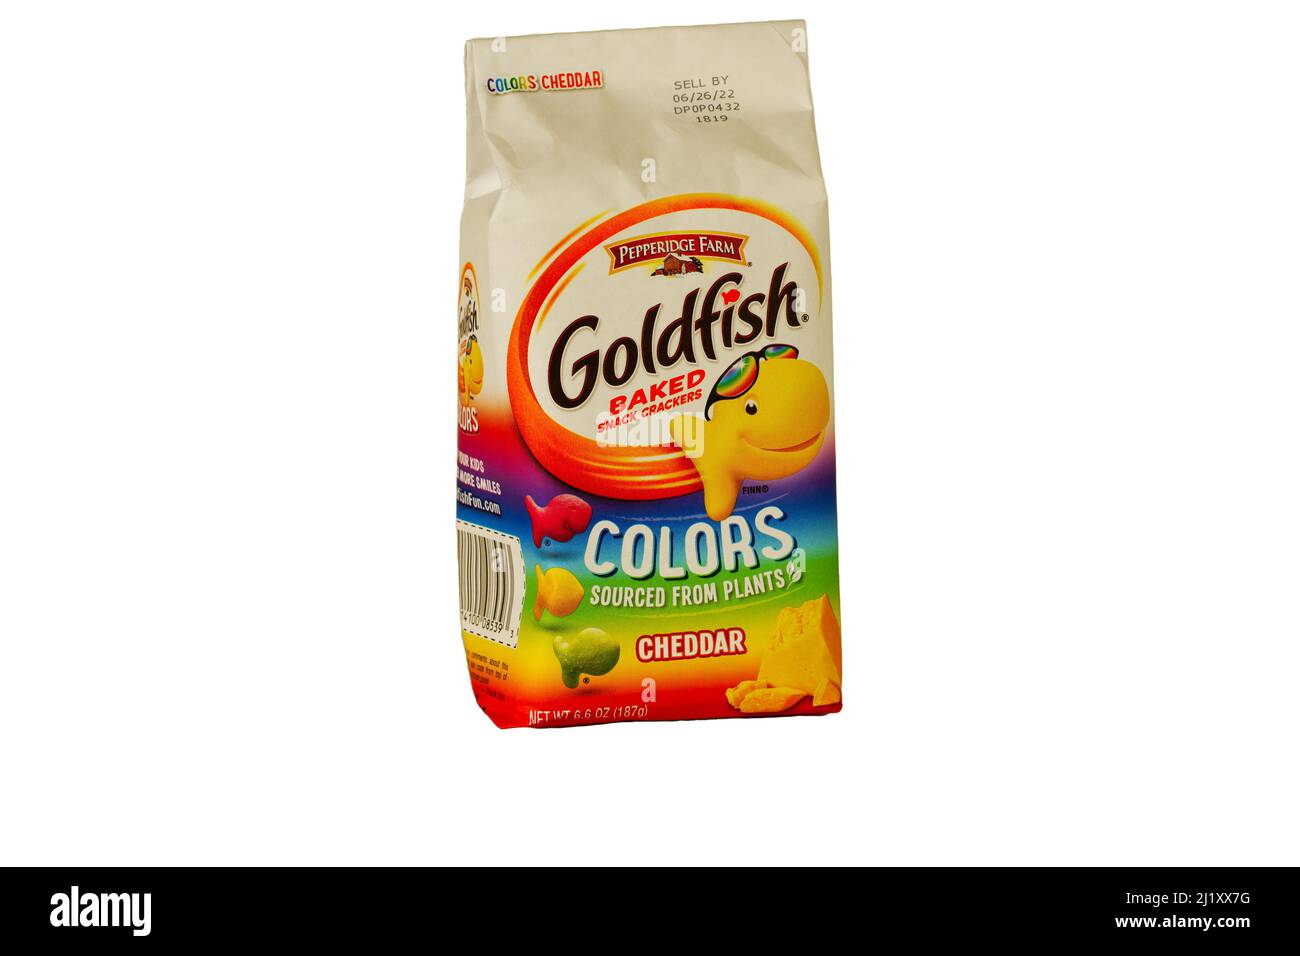 Lancaster, PA, USA - 27 marzo 2022: Un sacchetto di pepperidge aromatizzato al cheddar Farms Goldfish crichs crichers crichers colori. La borsa familiare con lo smilin Foto Stock